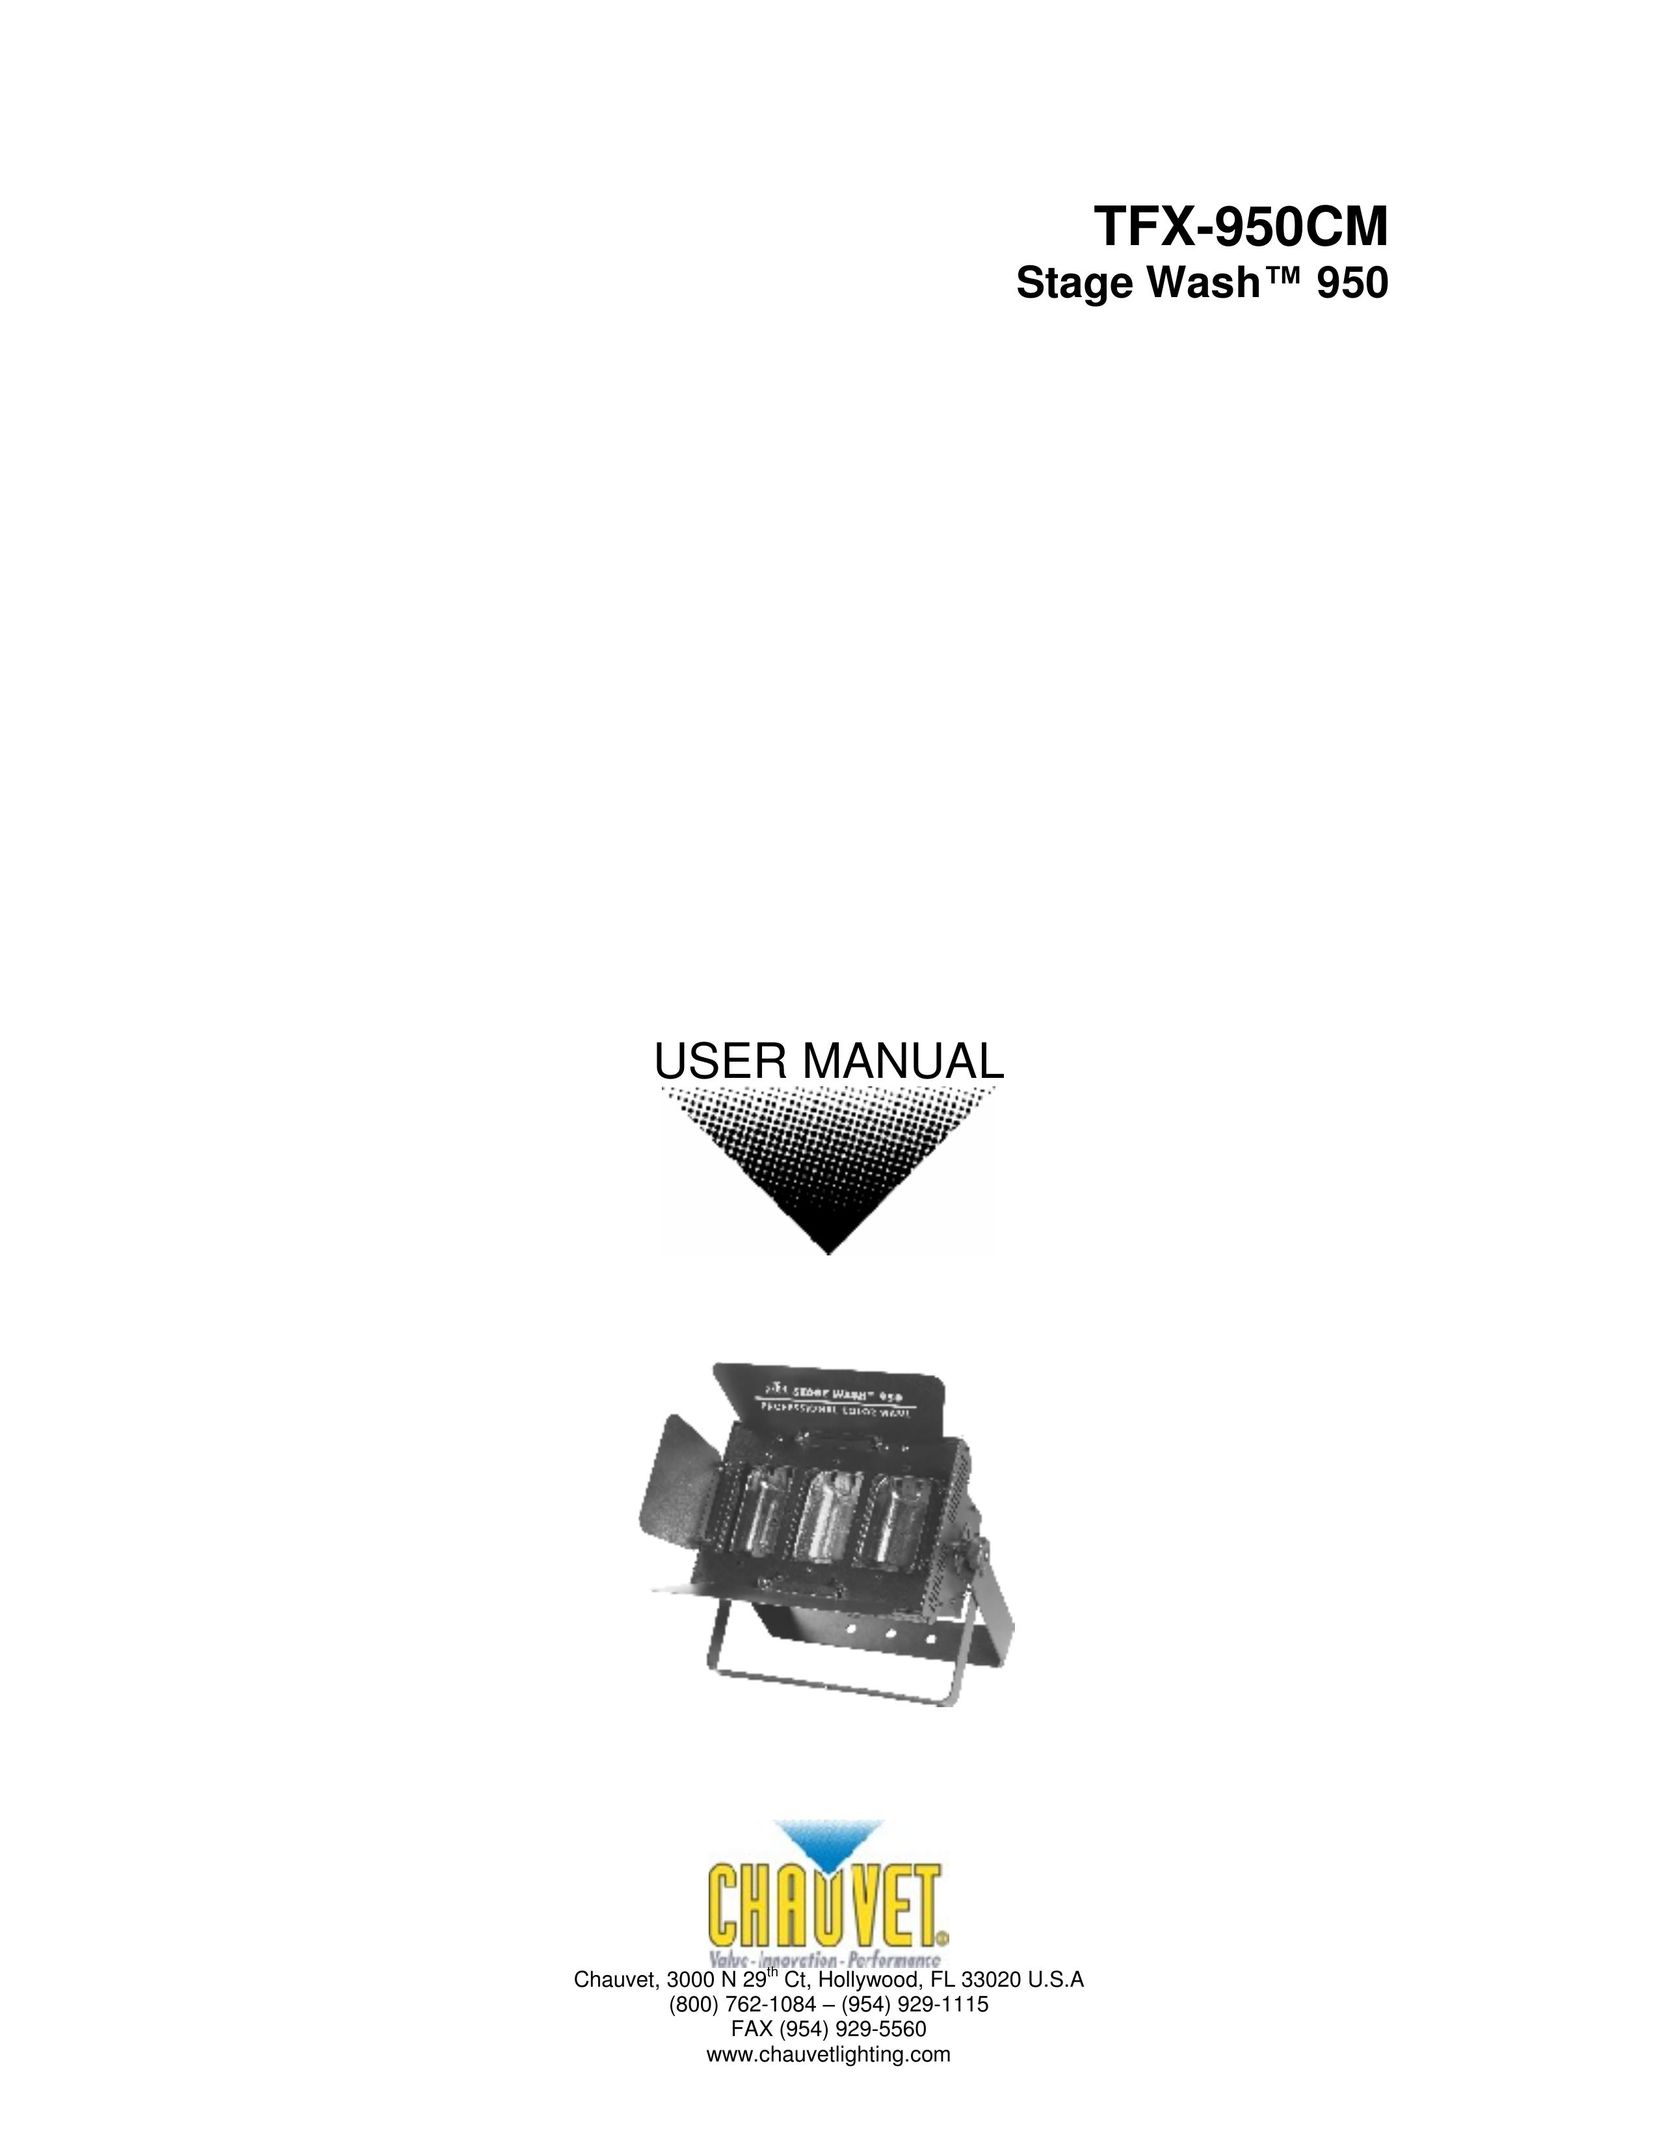 Chauvet TFX-950CM Work Light User Manual